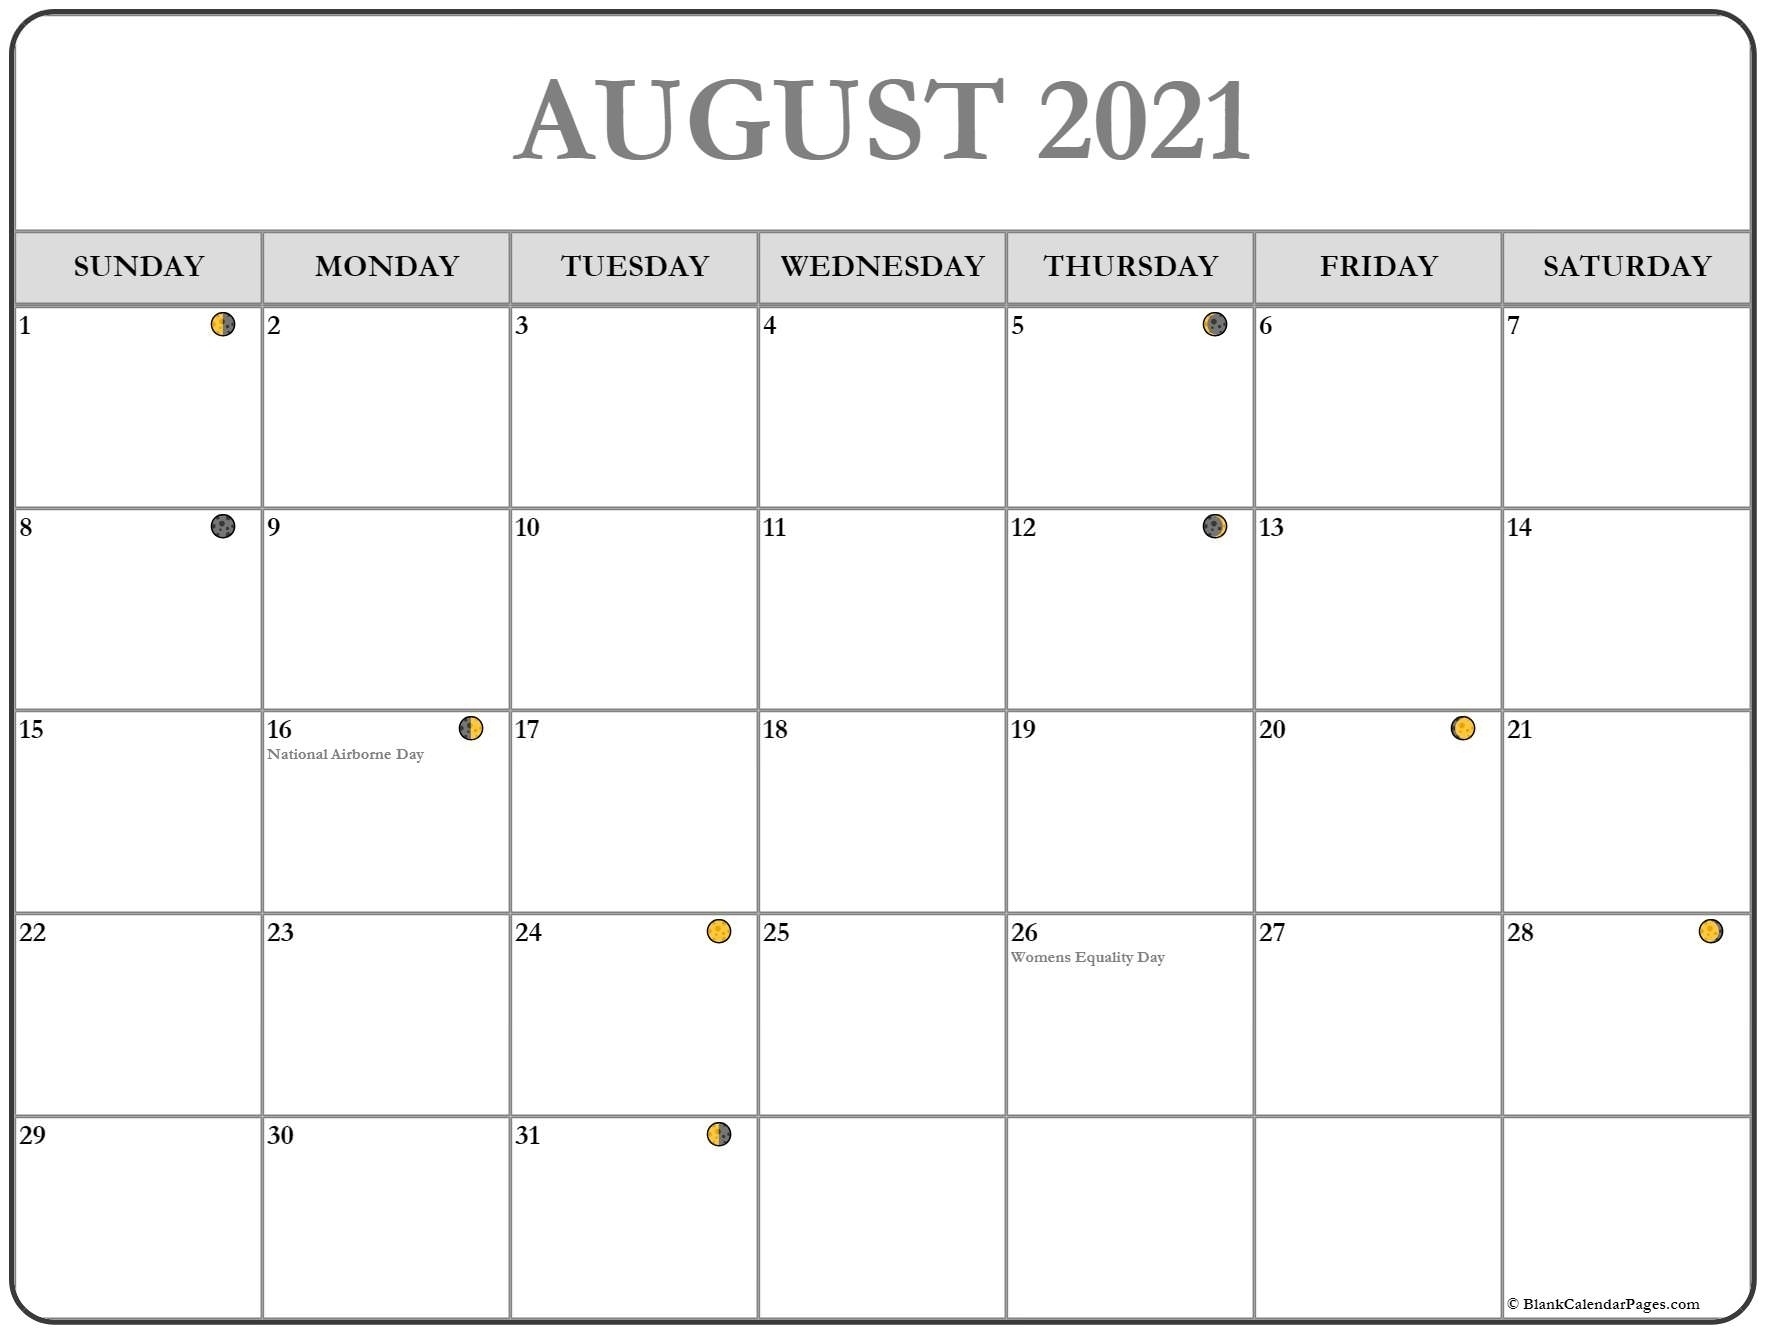 Catch Hawaii Doe Calendar 2021 2021 | Best Calendar Example August 2021 Calendar Philippines